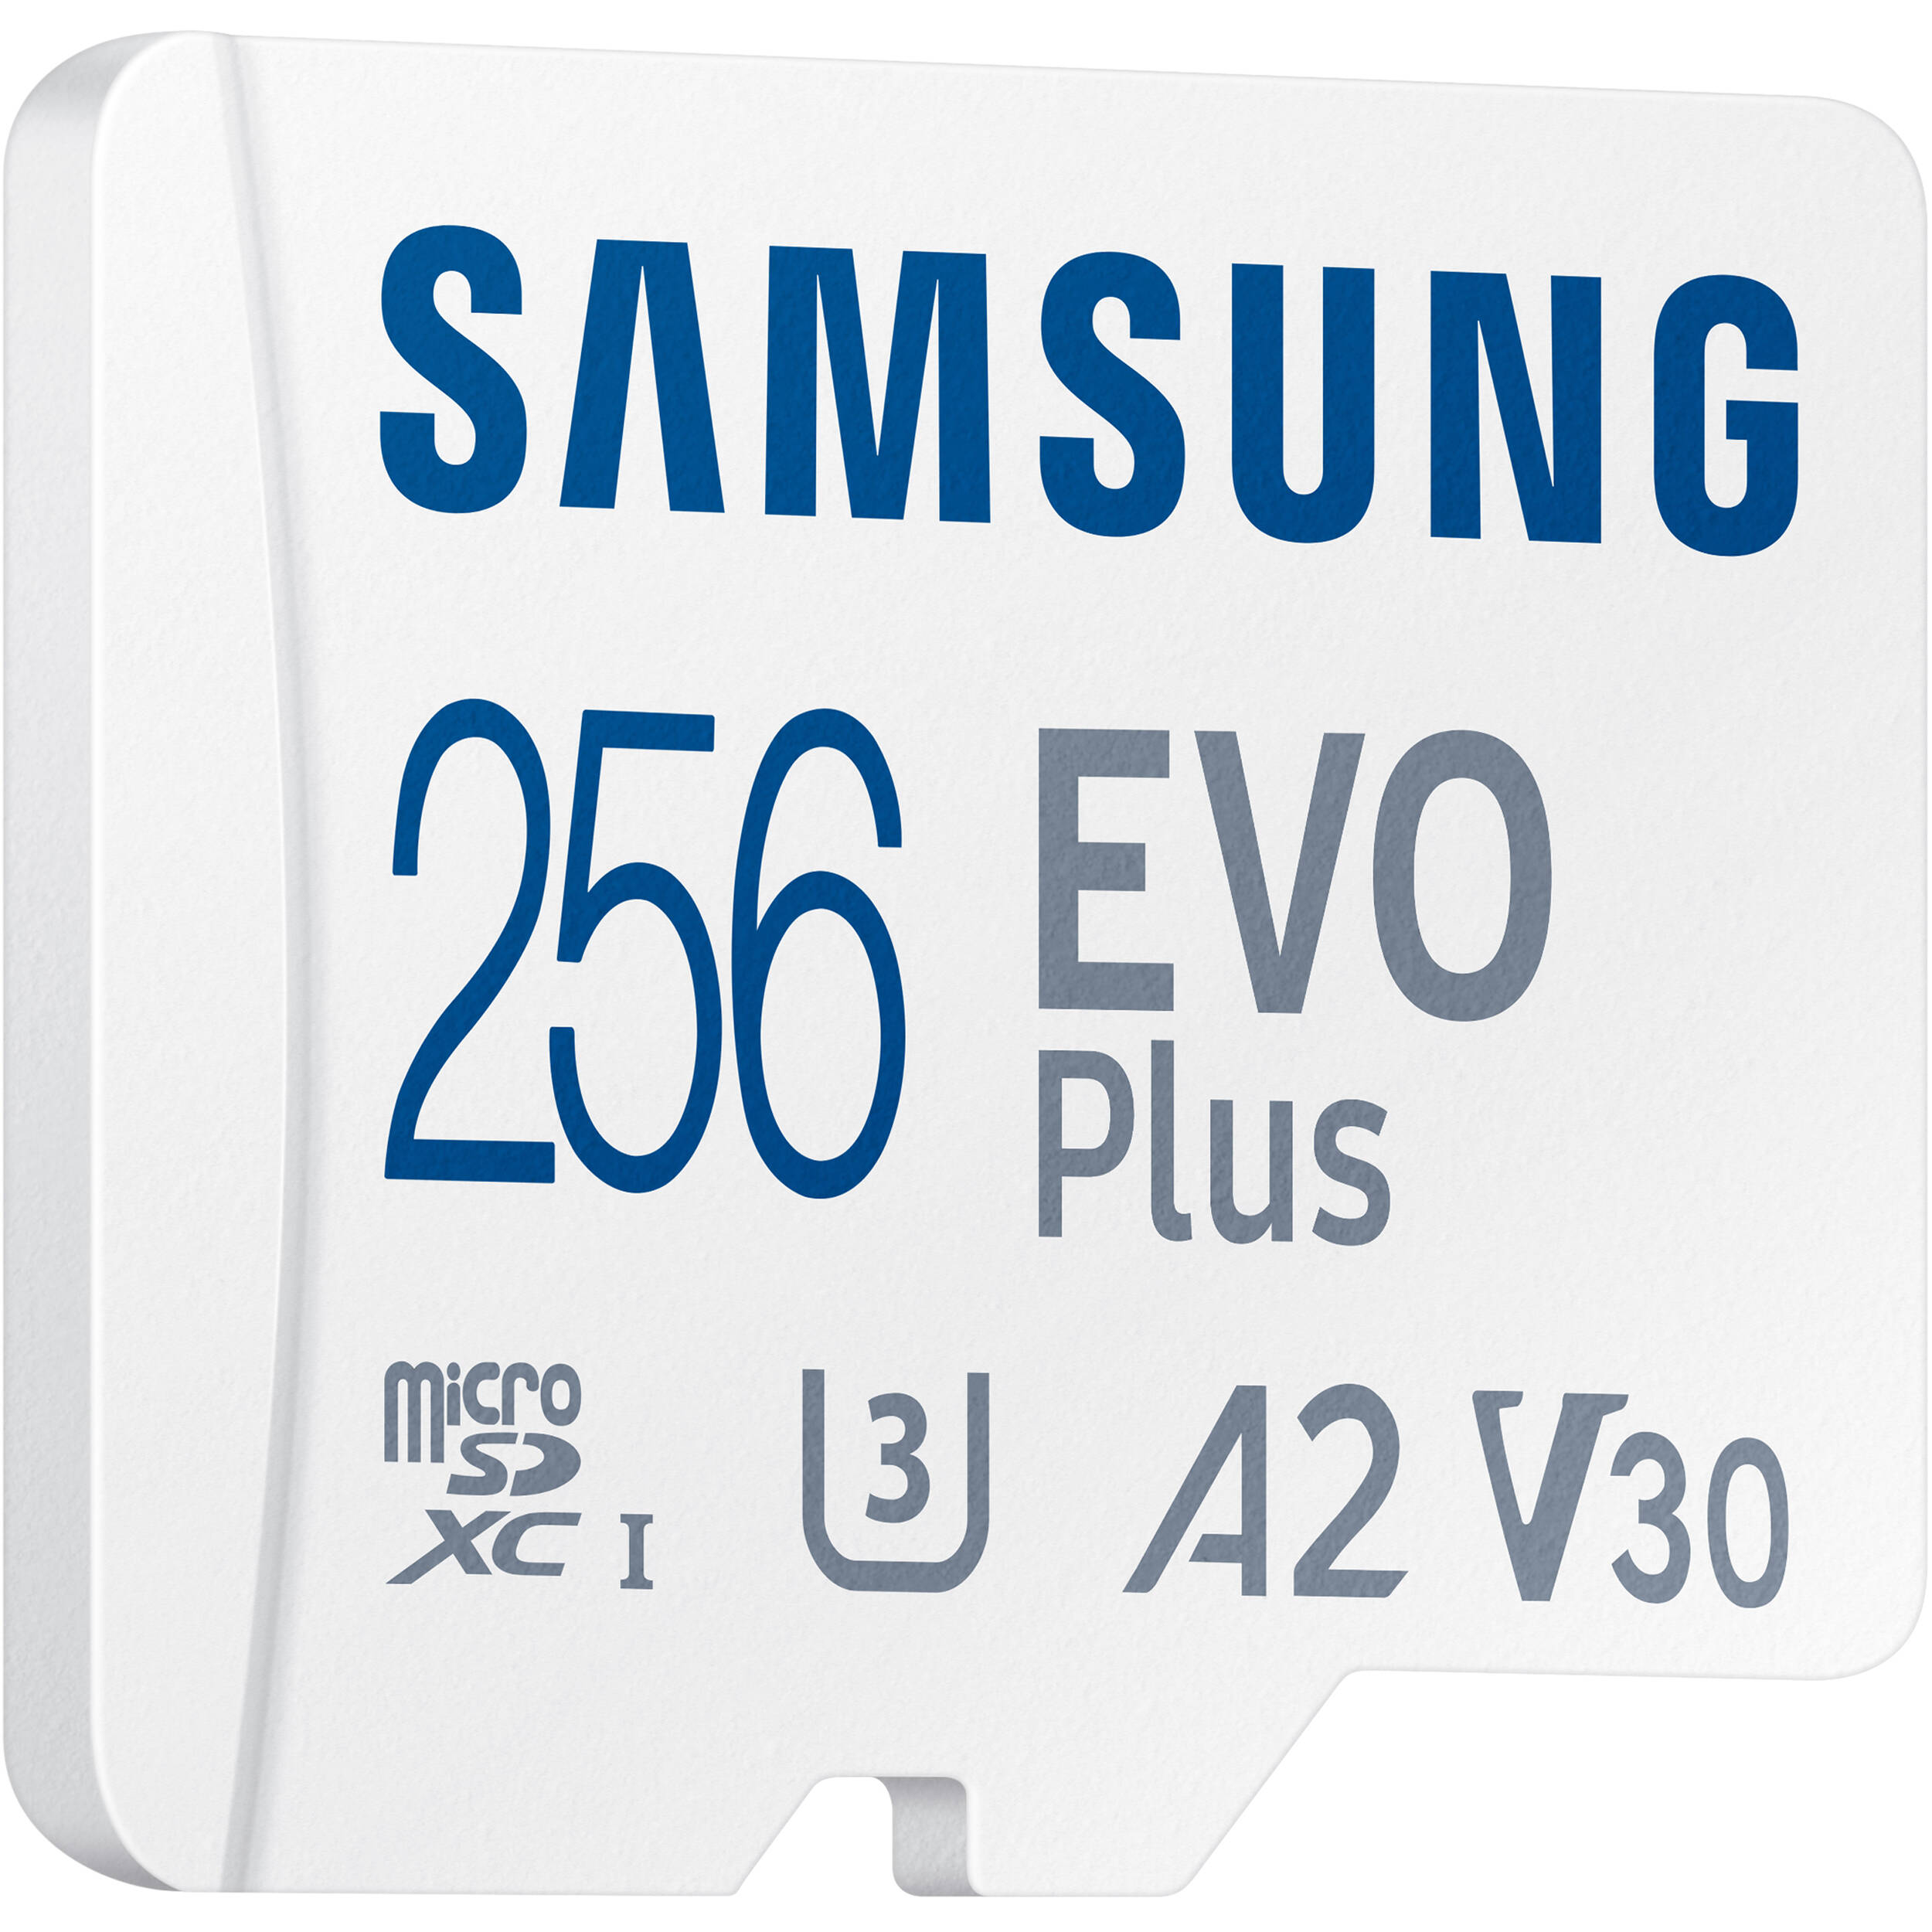 Thẻ Nhớ microSD EVO Plus 256GB (KA), Class 10, U3, 130 MB/s hiệu SAMSUNG; Model: MB-MC256KA/APC (Kèm Adapter) - Hàng Chính Hãng